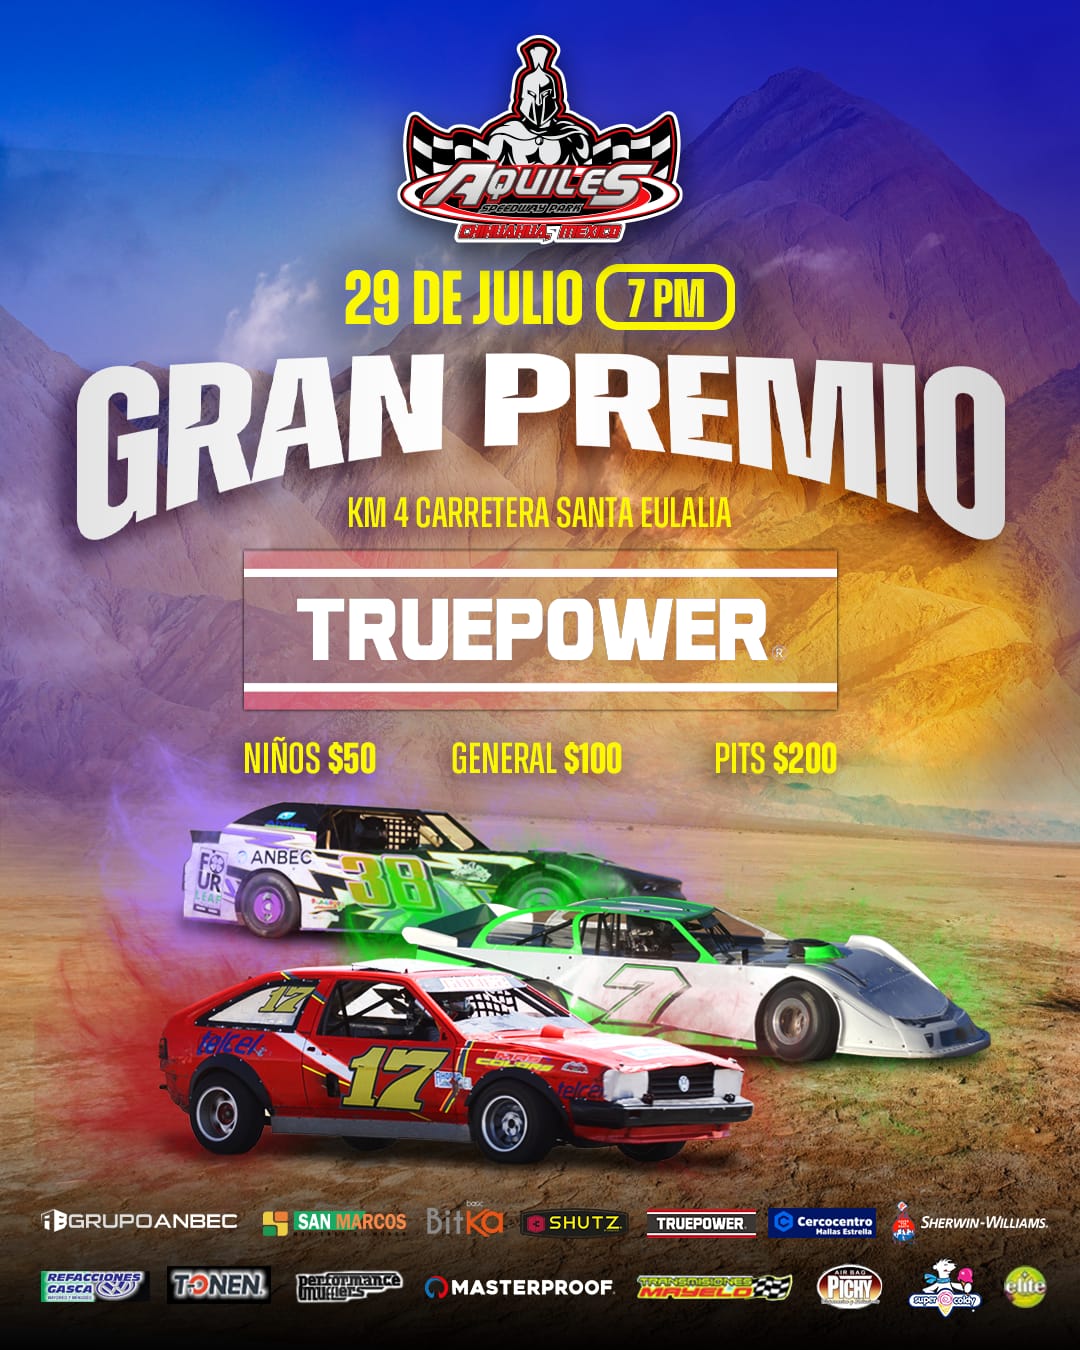 El “Gran Premio Truepower”, se disputa este sábado en el Aquiles Speedway Park